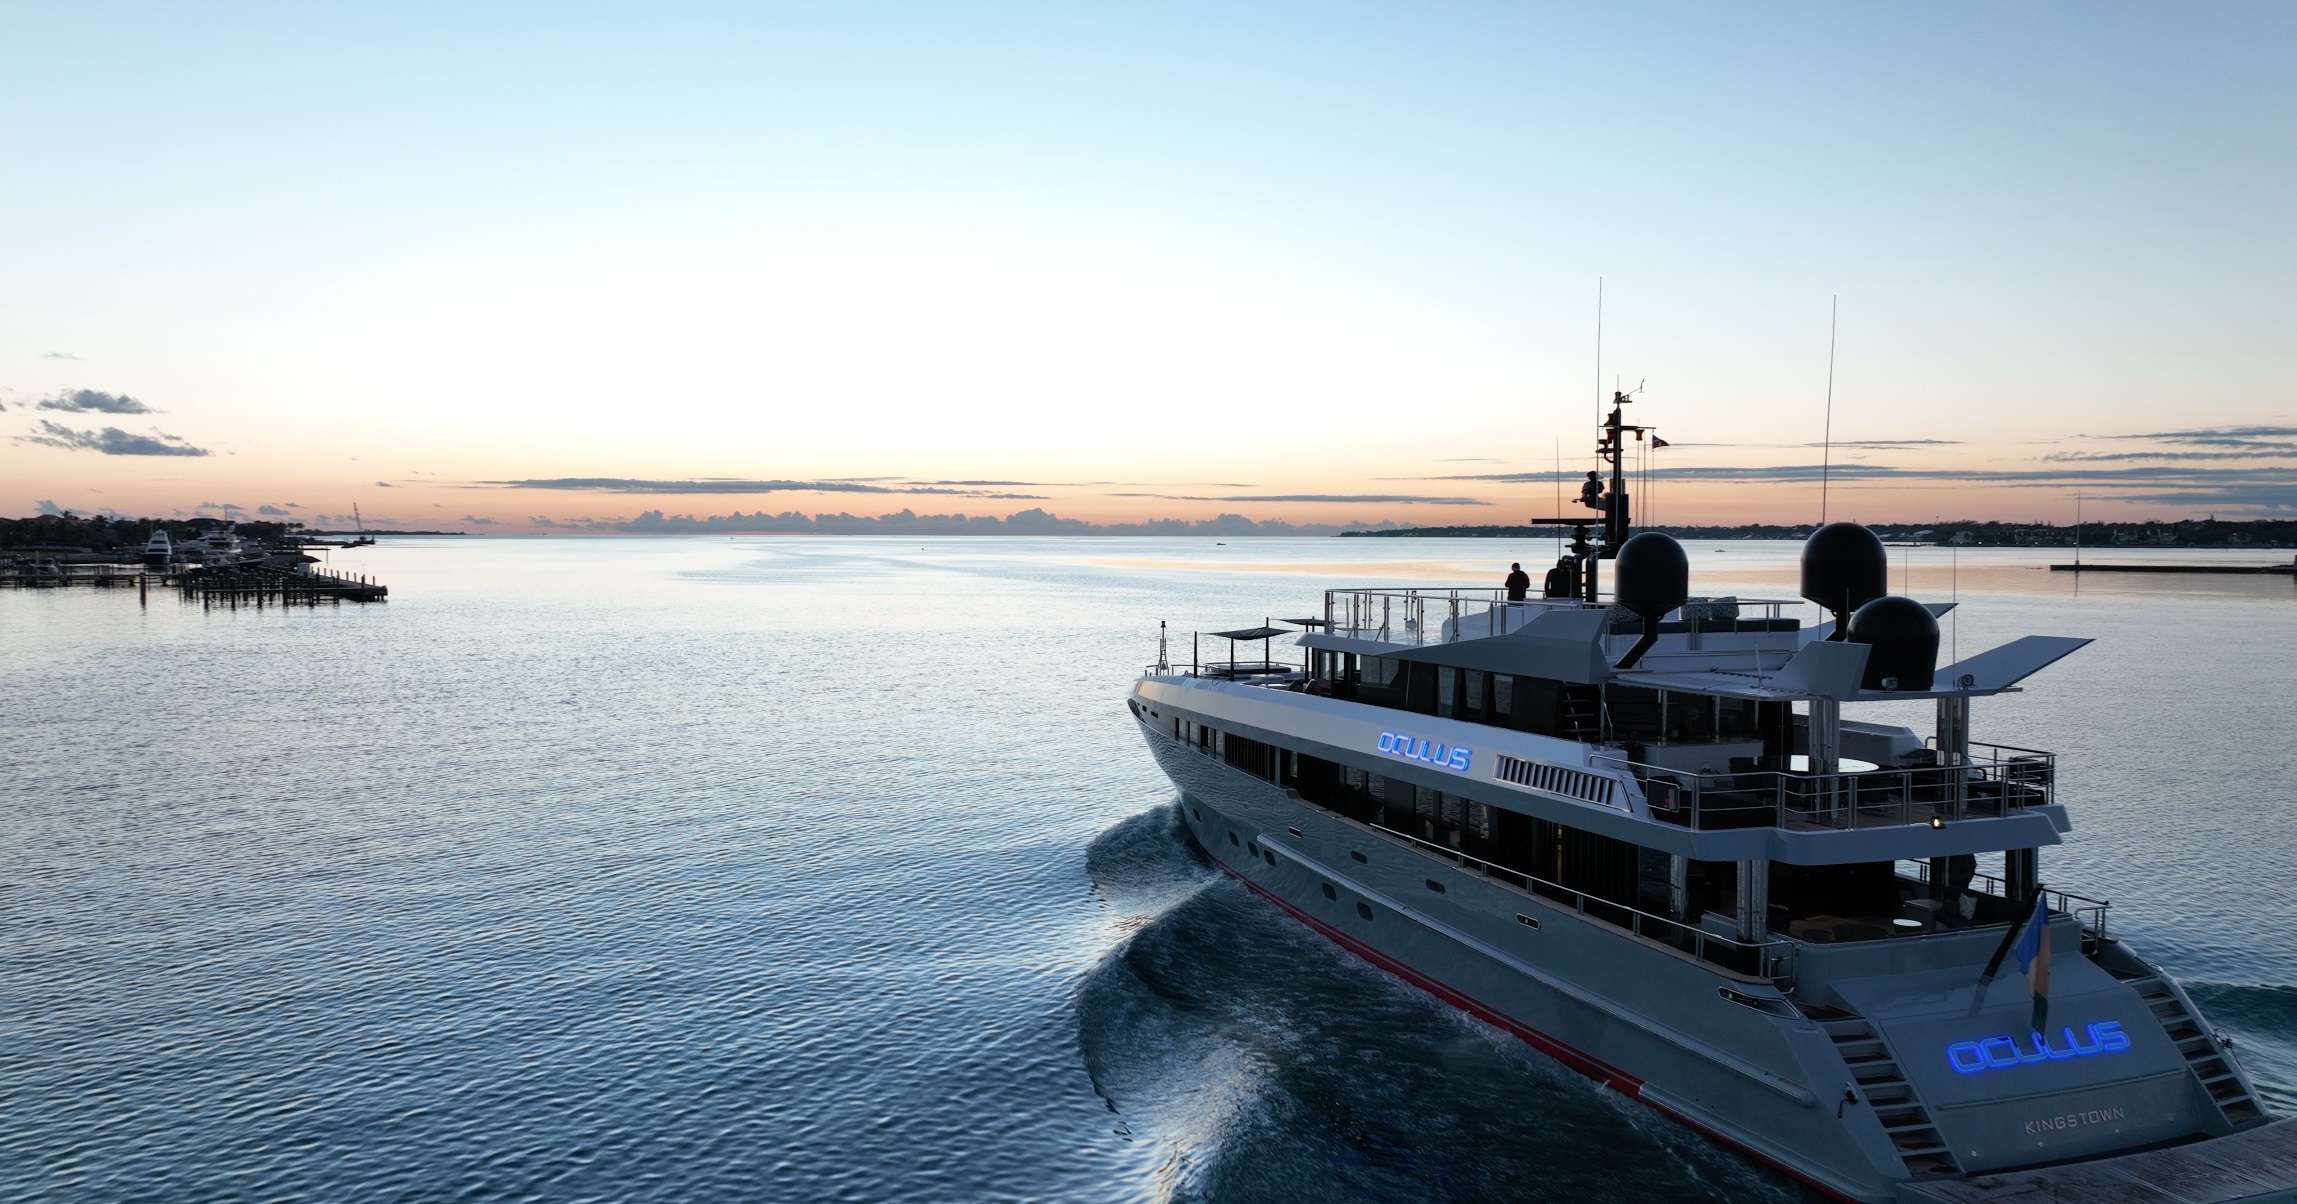 OCULUS Yacht Charter - Sunset View